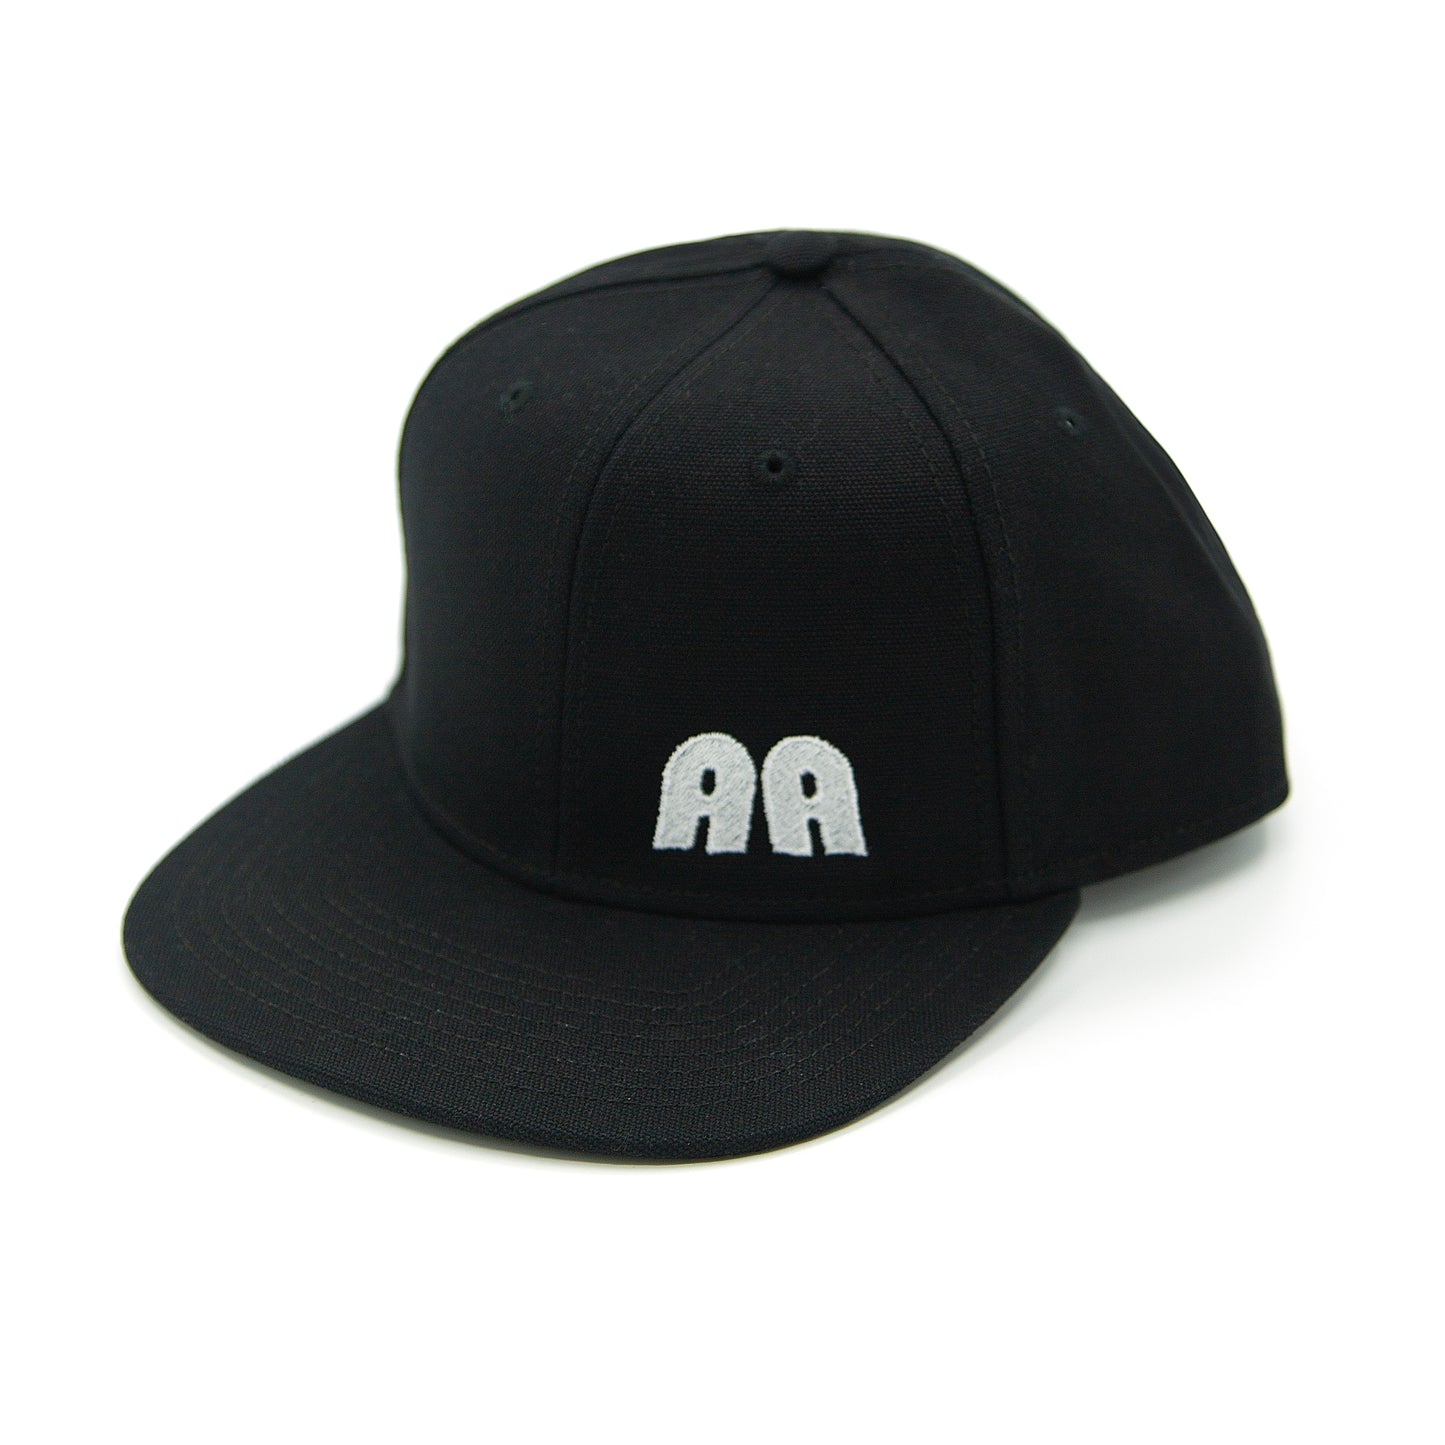 The “AA” Caap